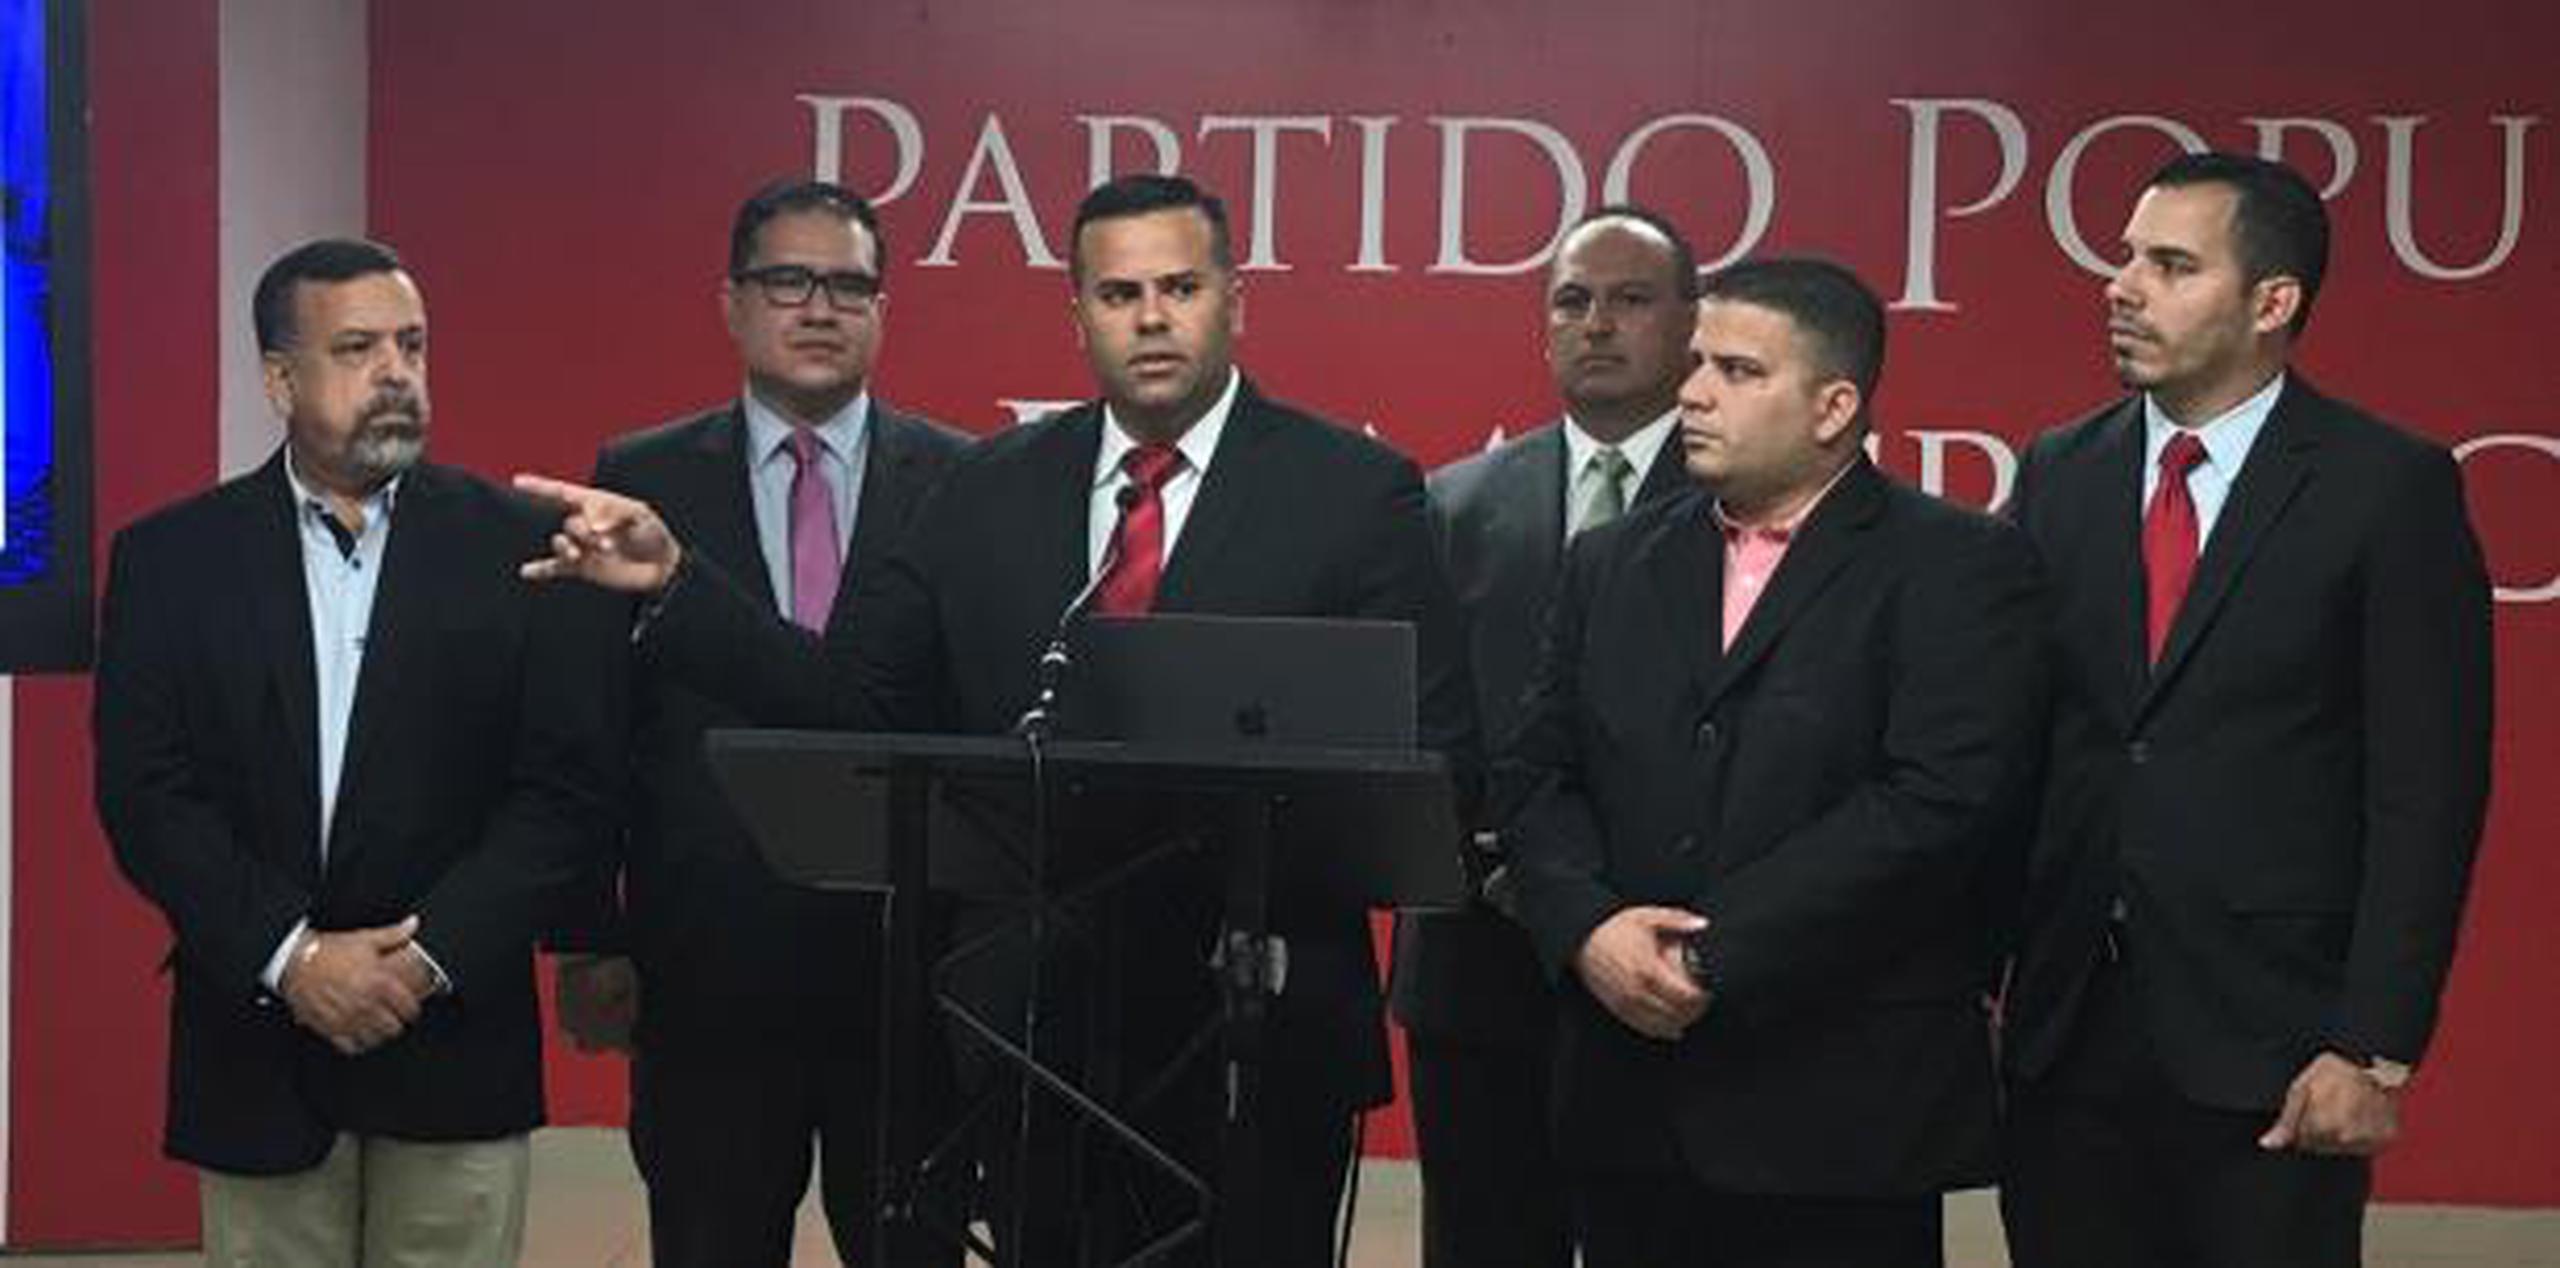 Cruz Burgos, al centro, tiene una multa de $3,000 de la Oficina del Contralor Electoral, según el liderato de la Palma. (suministrada)